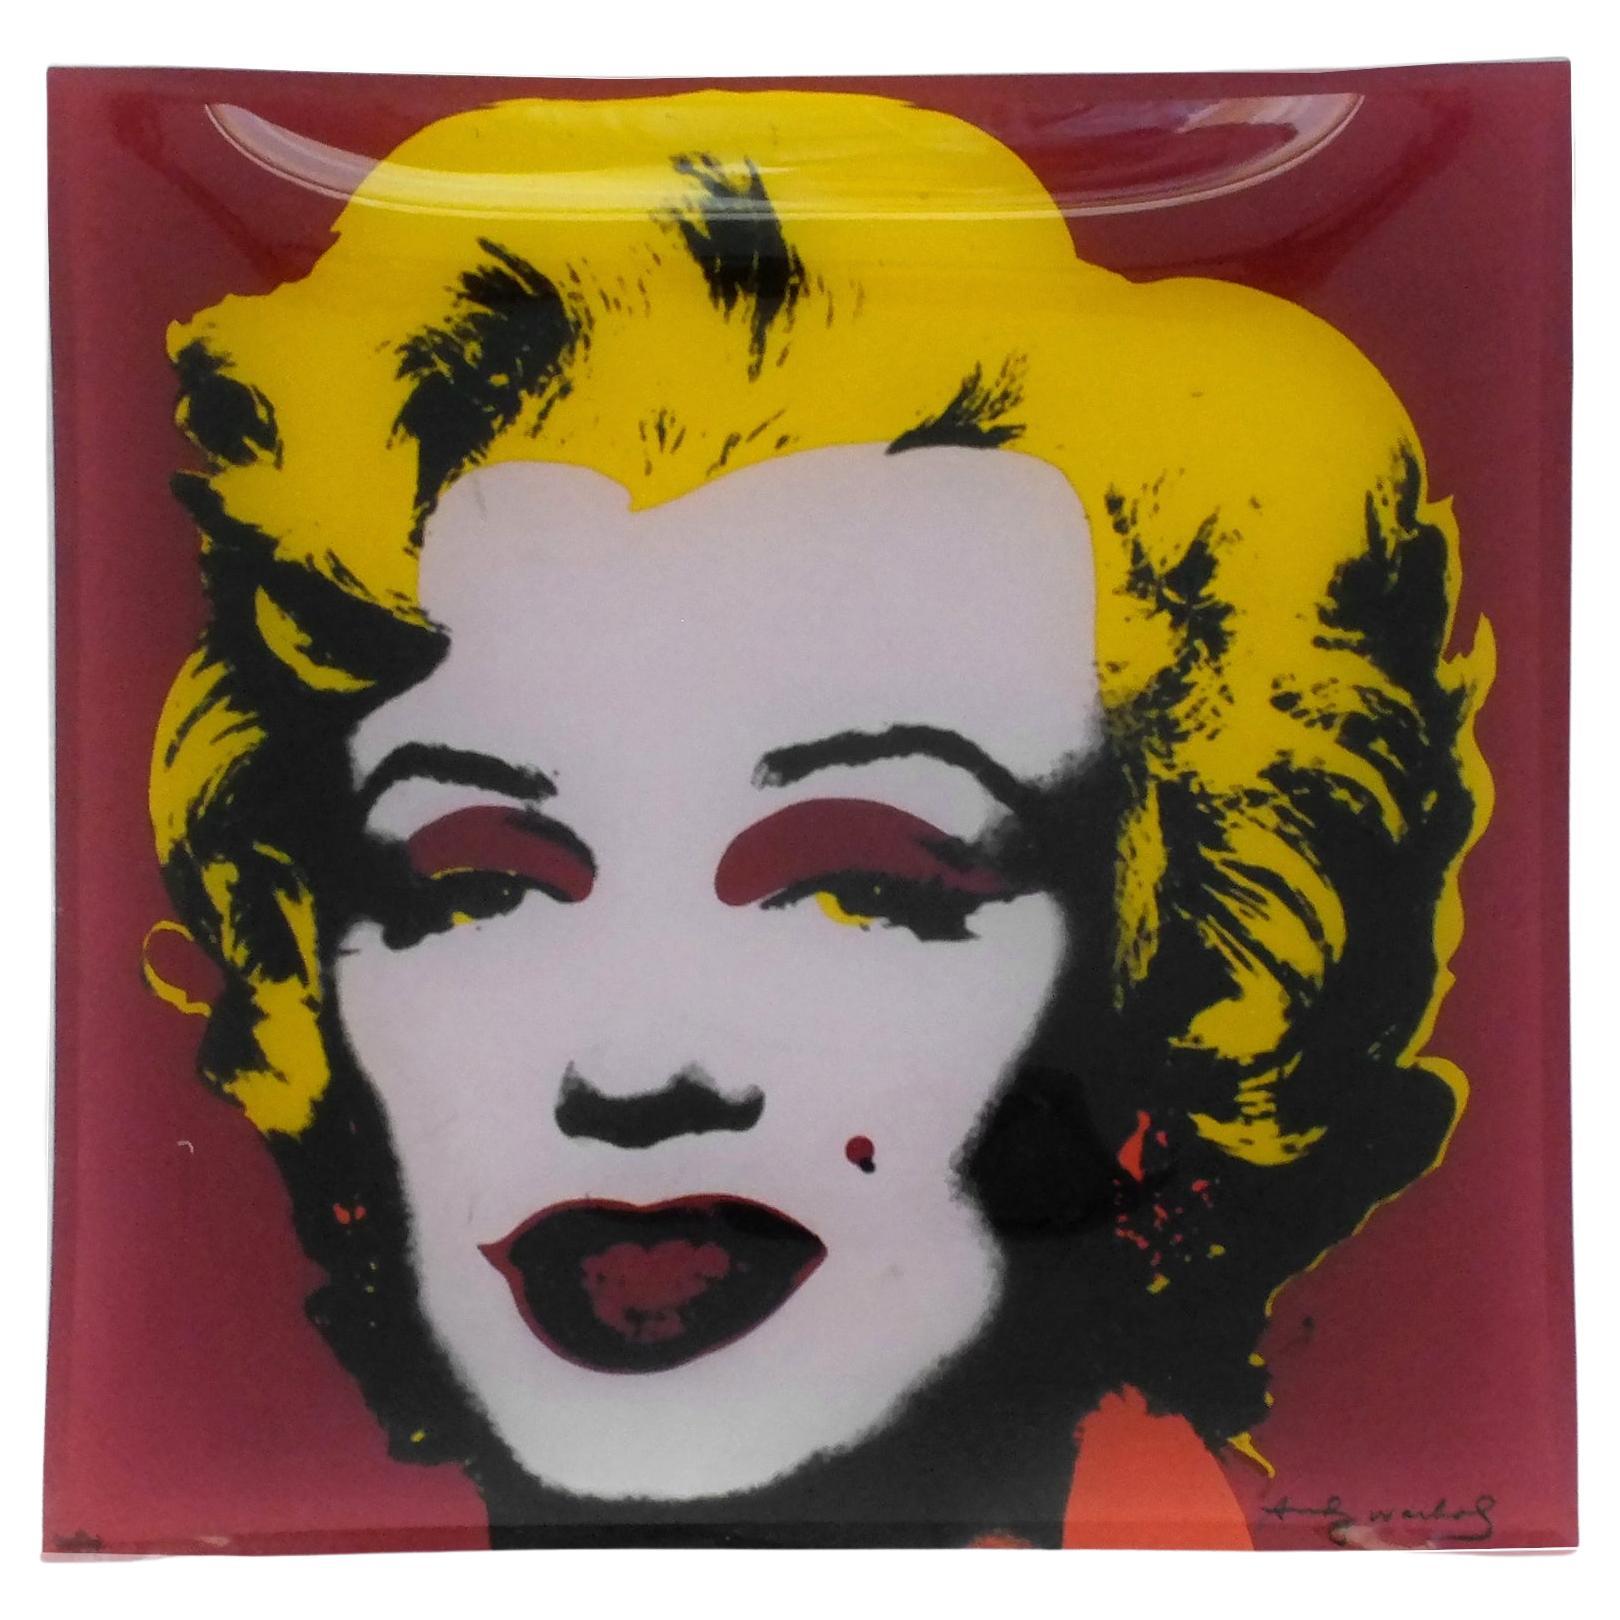 Assiette carrée en verre vintage Rosenthal de la série Marilyn Monroe et des célébrités Andy Warhol